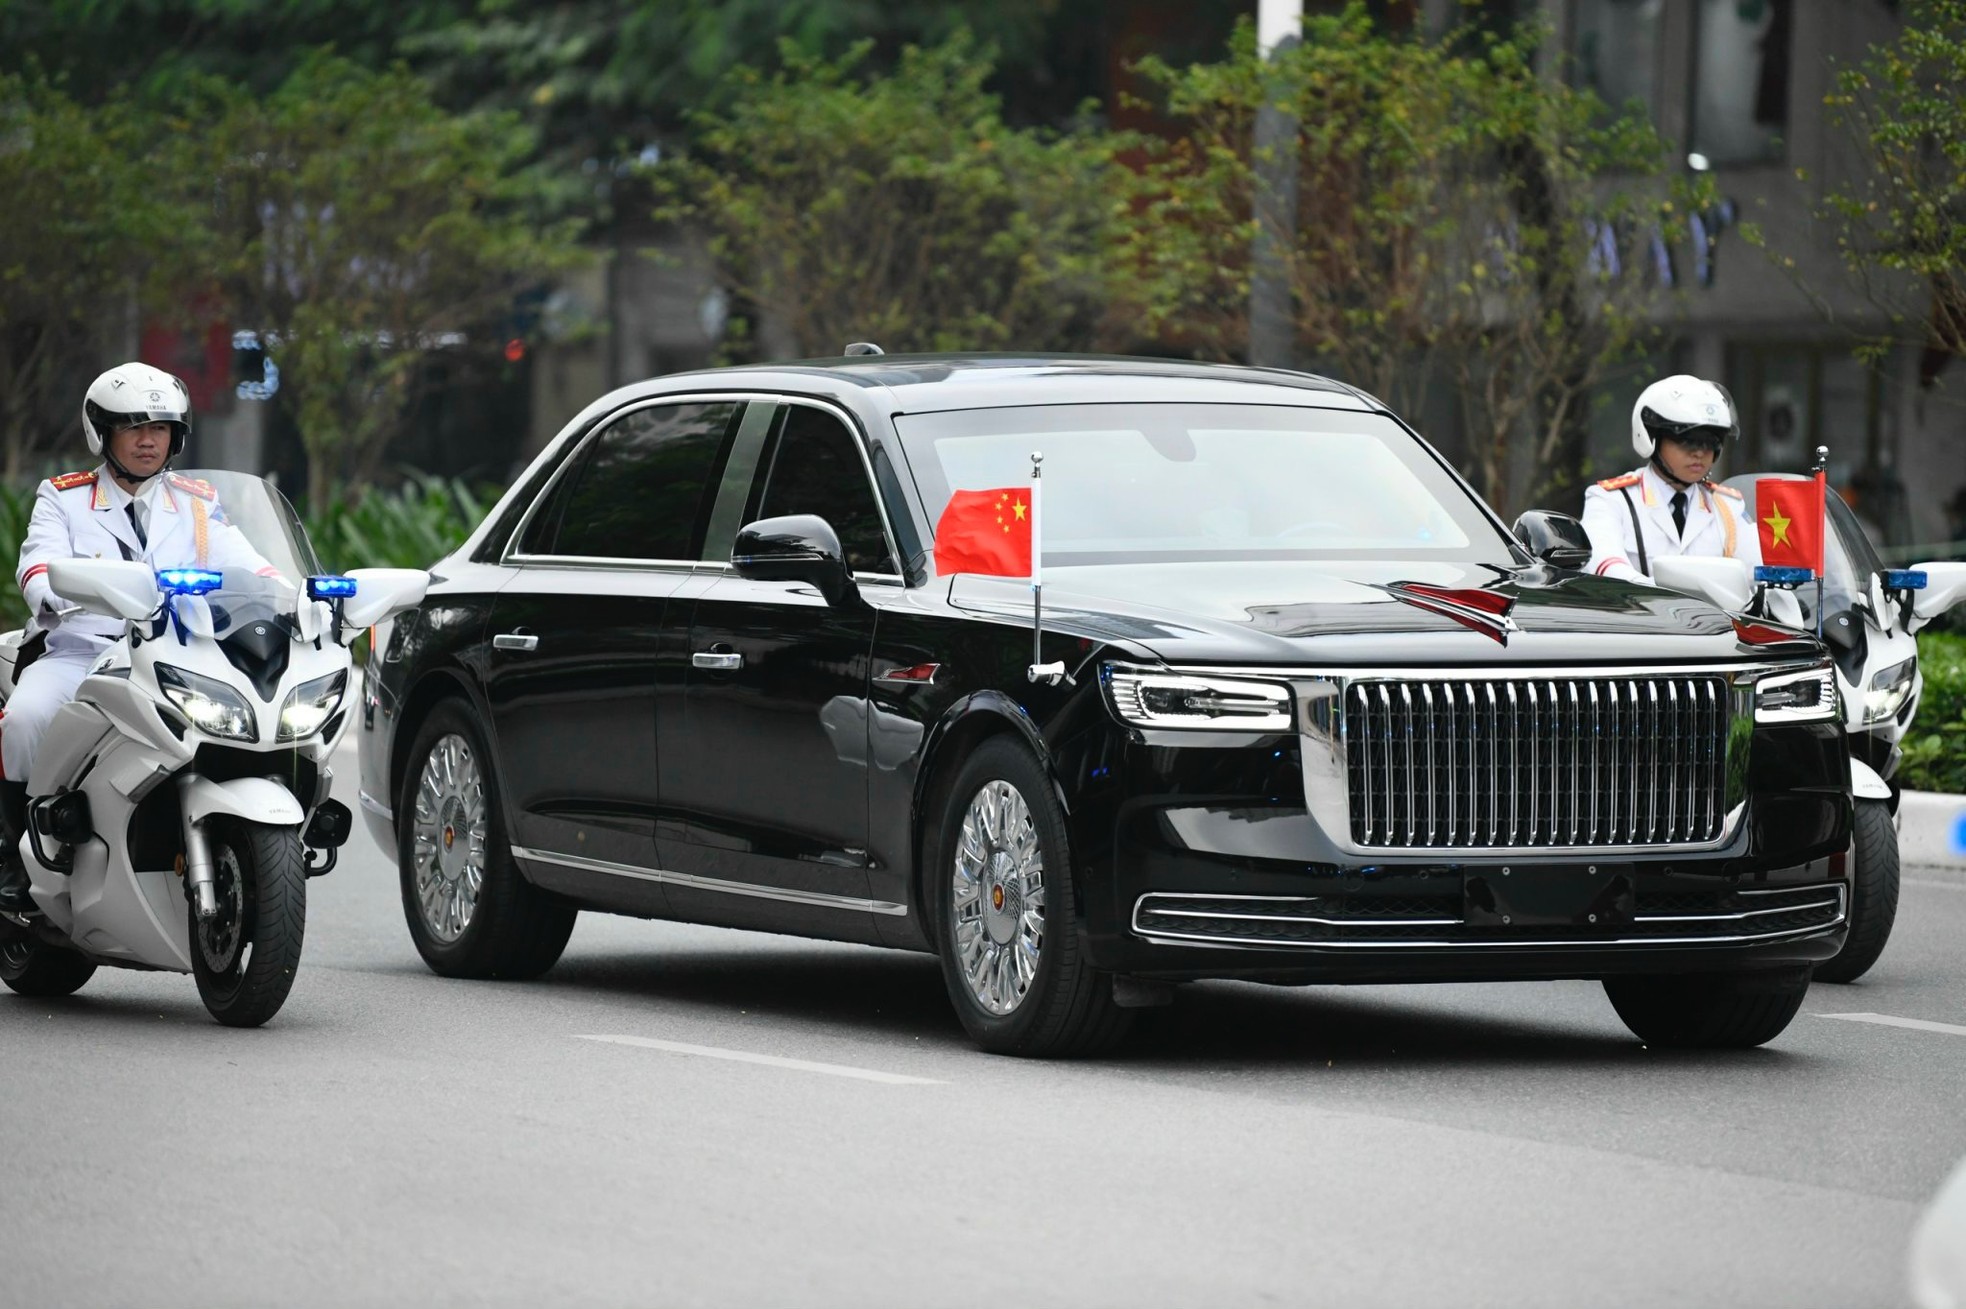 Đoàn xe hộ tống Tổng Bí thư, Chủ tịch Trung Quốc Tập Cận Bình trên đường phố Hà Nội sáng nay ảnh 4